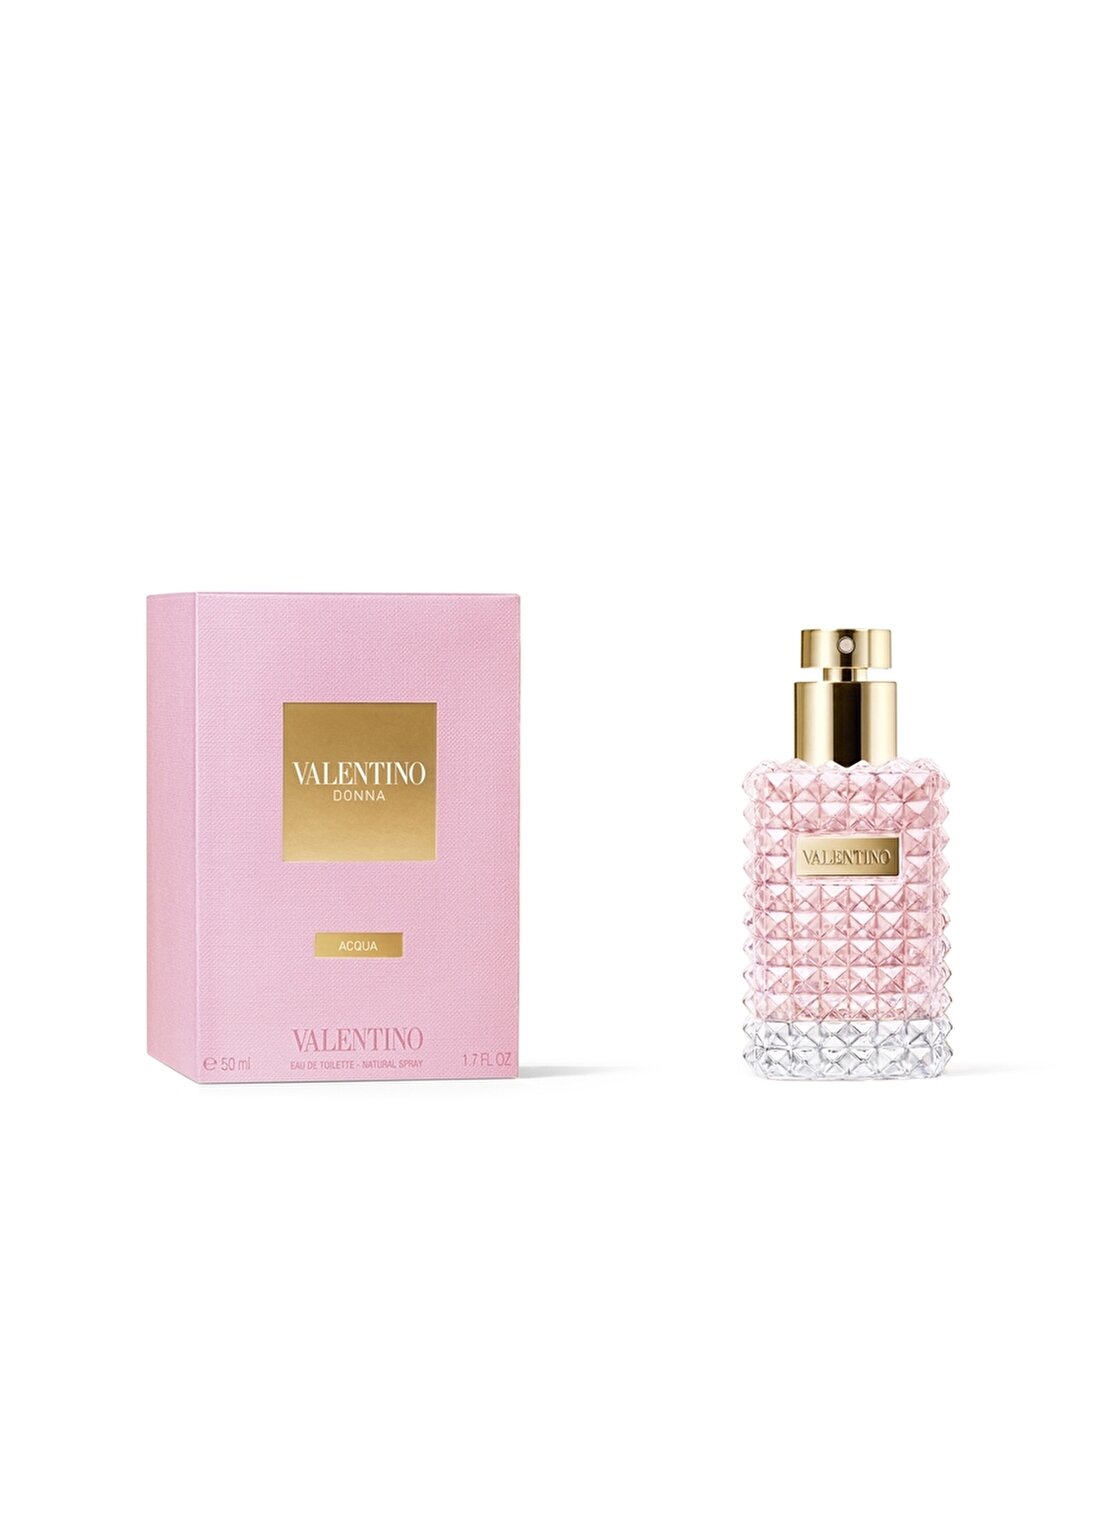 Valentino Donna Acqua Edt 50 Ml Kadın Parfüm